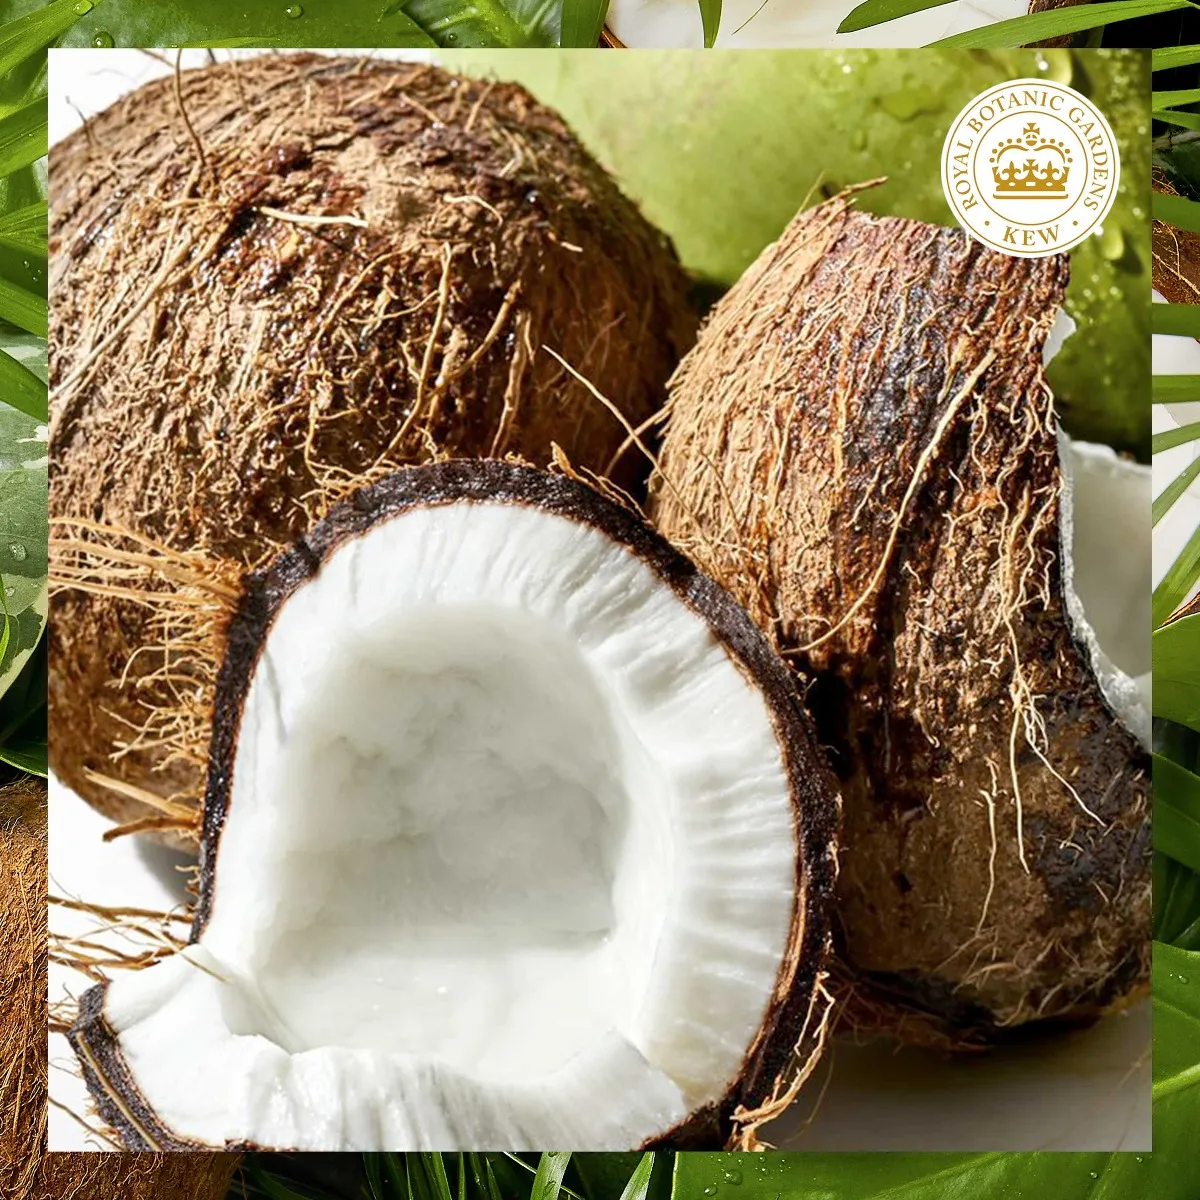 Herbal Essences Hydratačný Kondicionér Coconut Milk, Na Suché Vlasy 1×275ml, kondicionér na vlasy